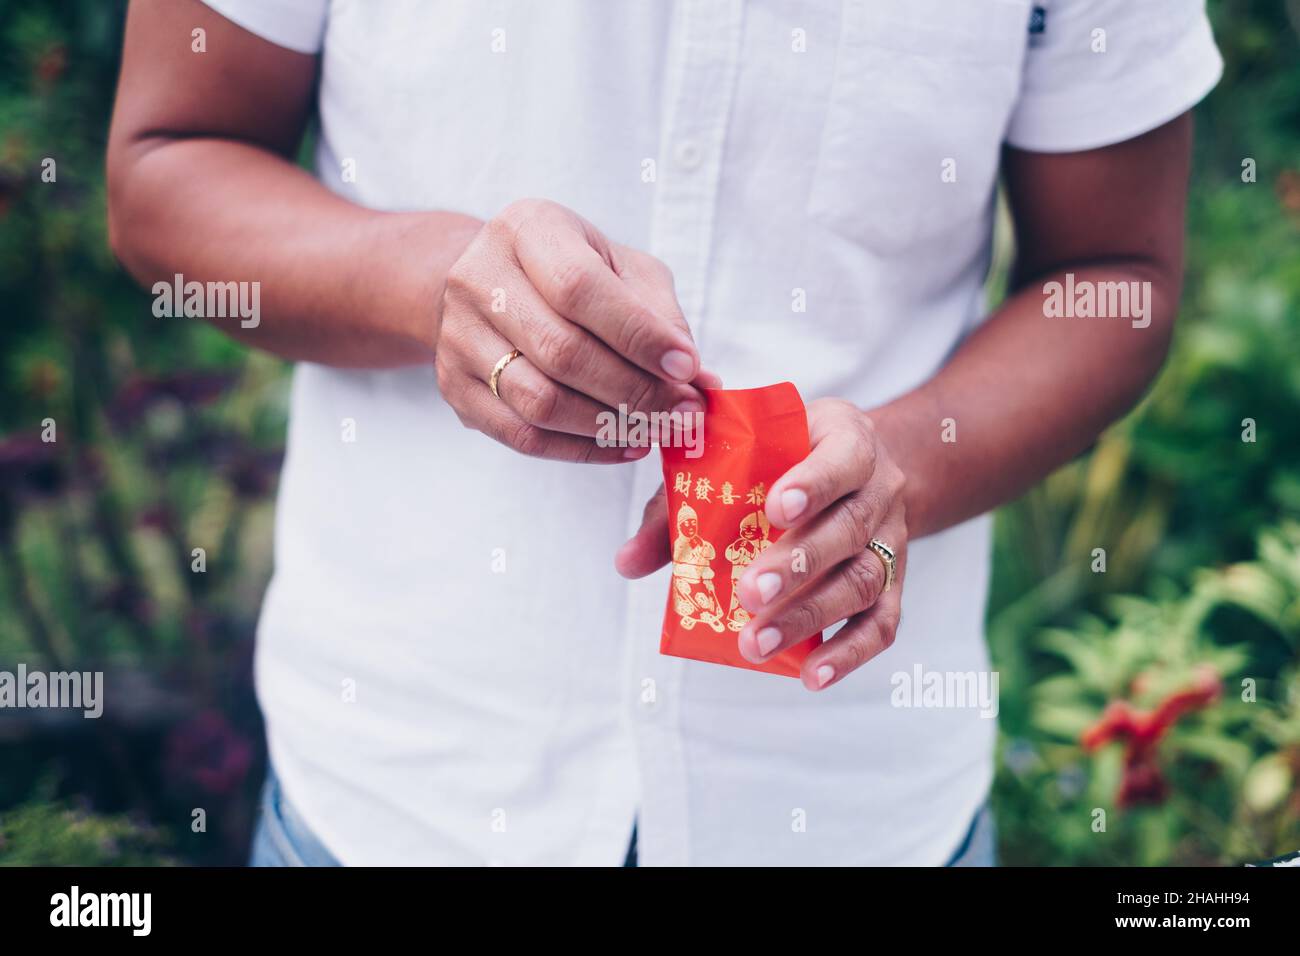 Les mains de l'homme ouvrant une enveloppe rouge ou un paquet rouge appelé Ang Pao ou Ang Pow, aussi Hongbao ou Hungbao en mandarin et Lai See en cantonais. Banque D'Images